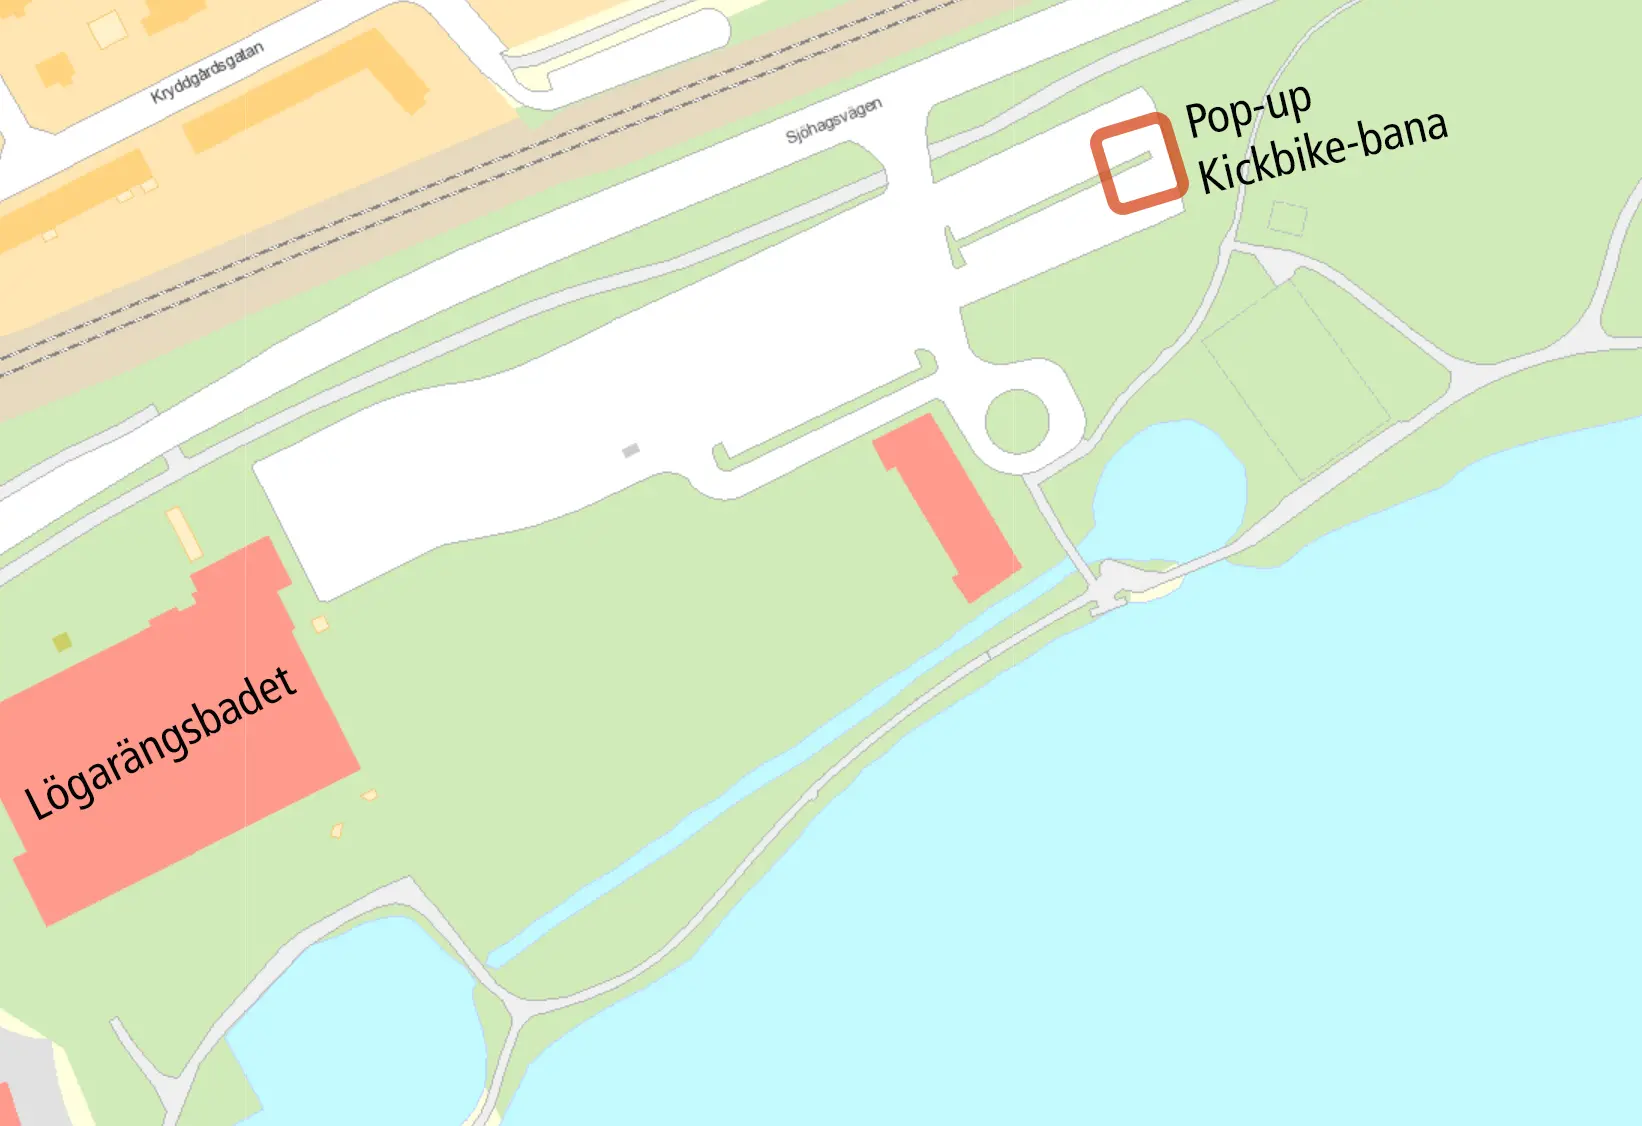 kartbild över Lögarängsbadet och parkeringen. På parkeringen ovanför lekplatsen finns kickbike-banan.